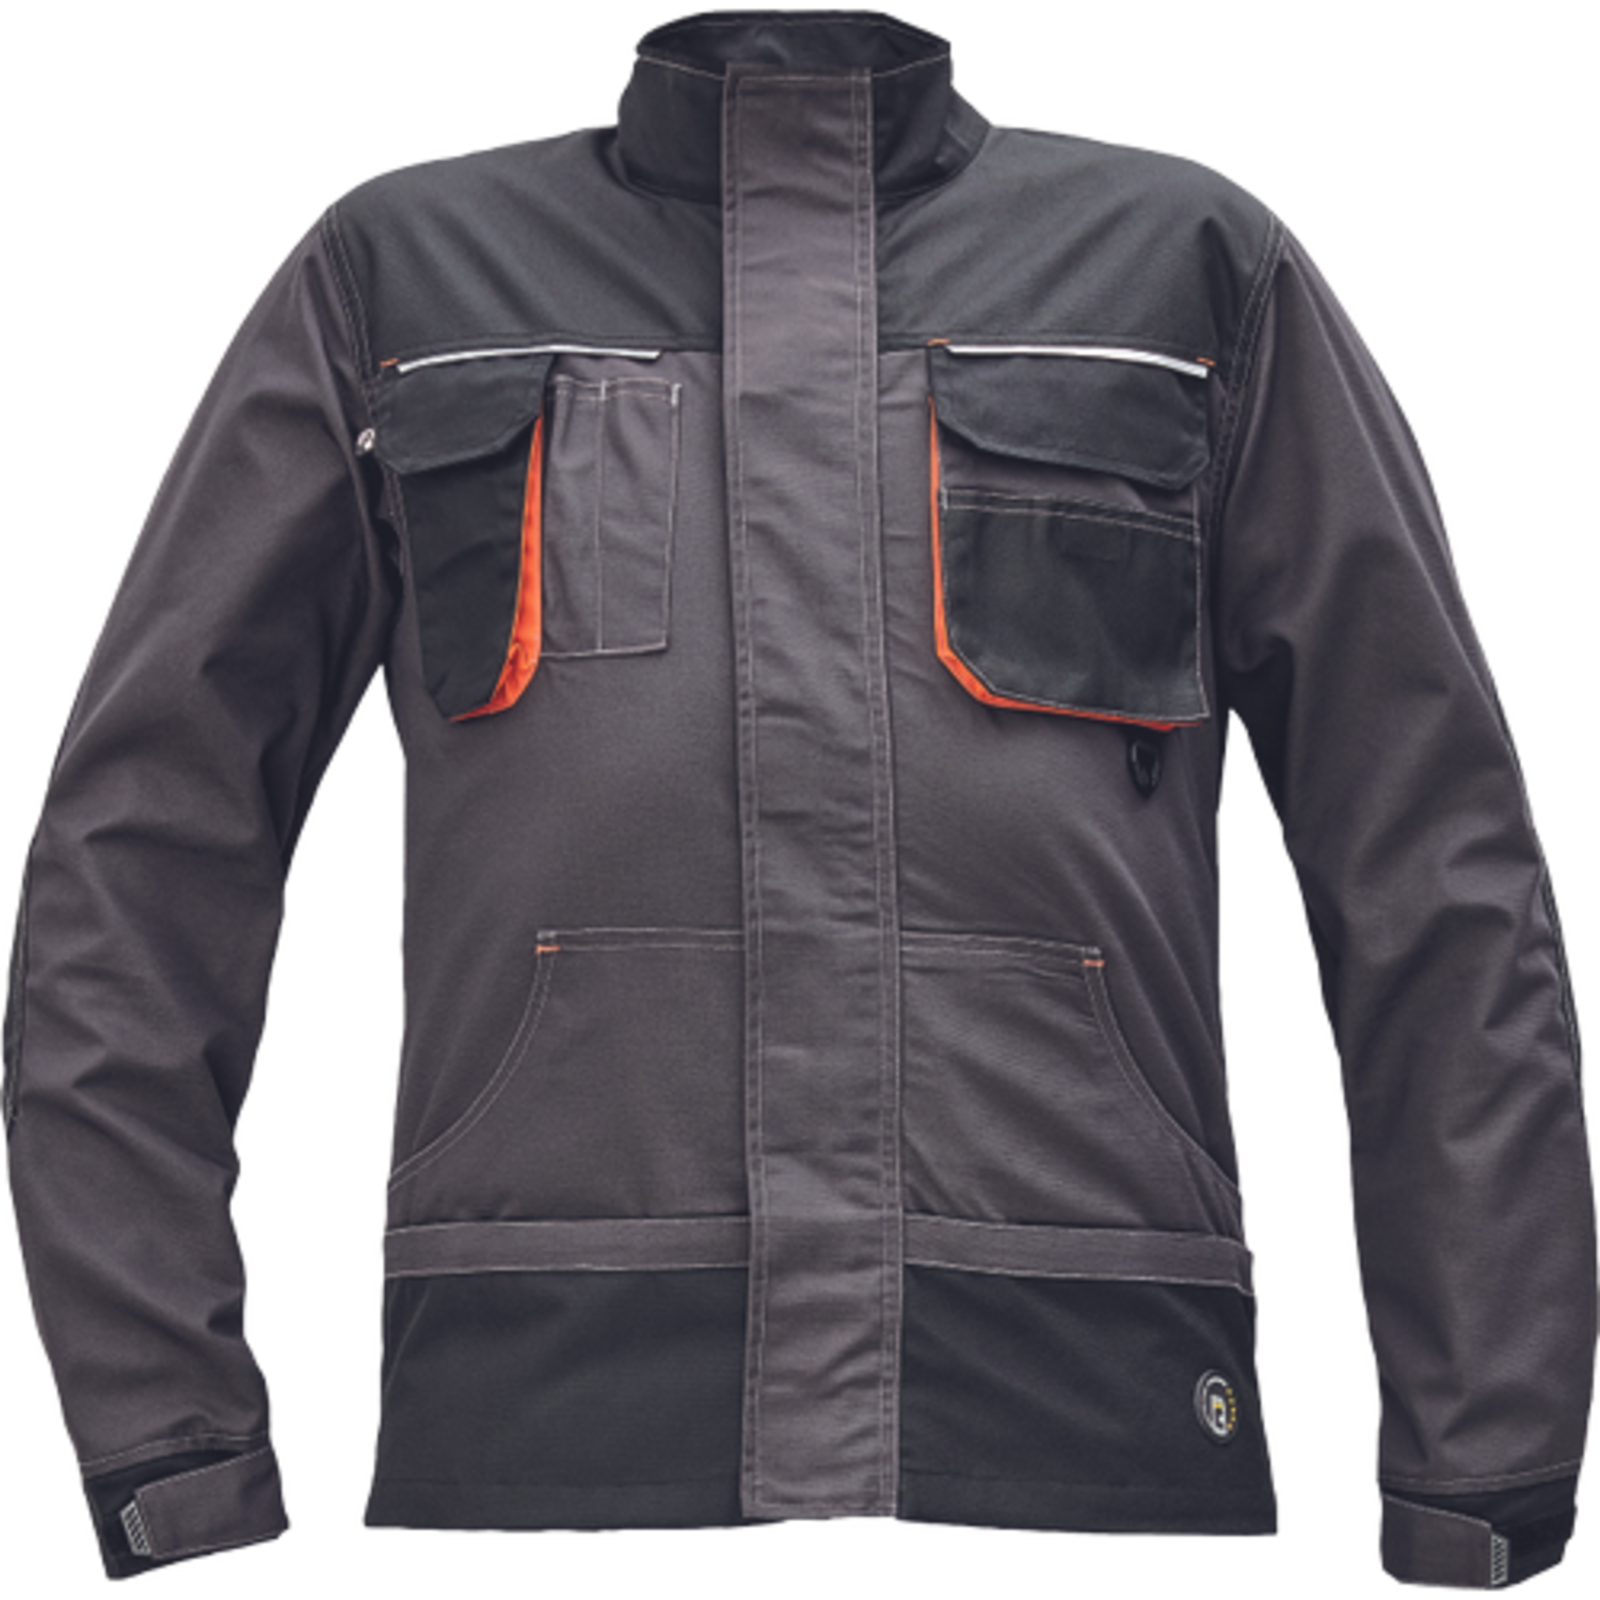 Odolná montérková bunda Emerton Plus - veľkosť: 56, farba: antracit/oranžová